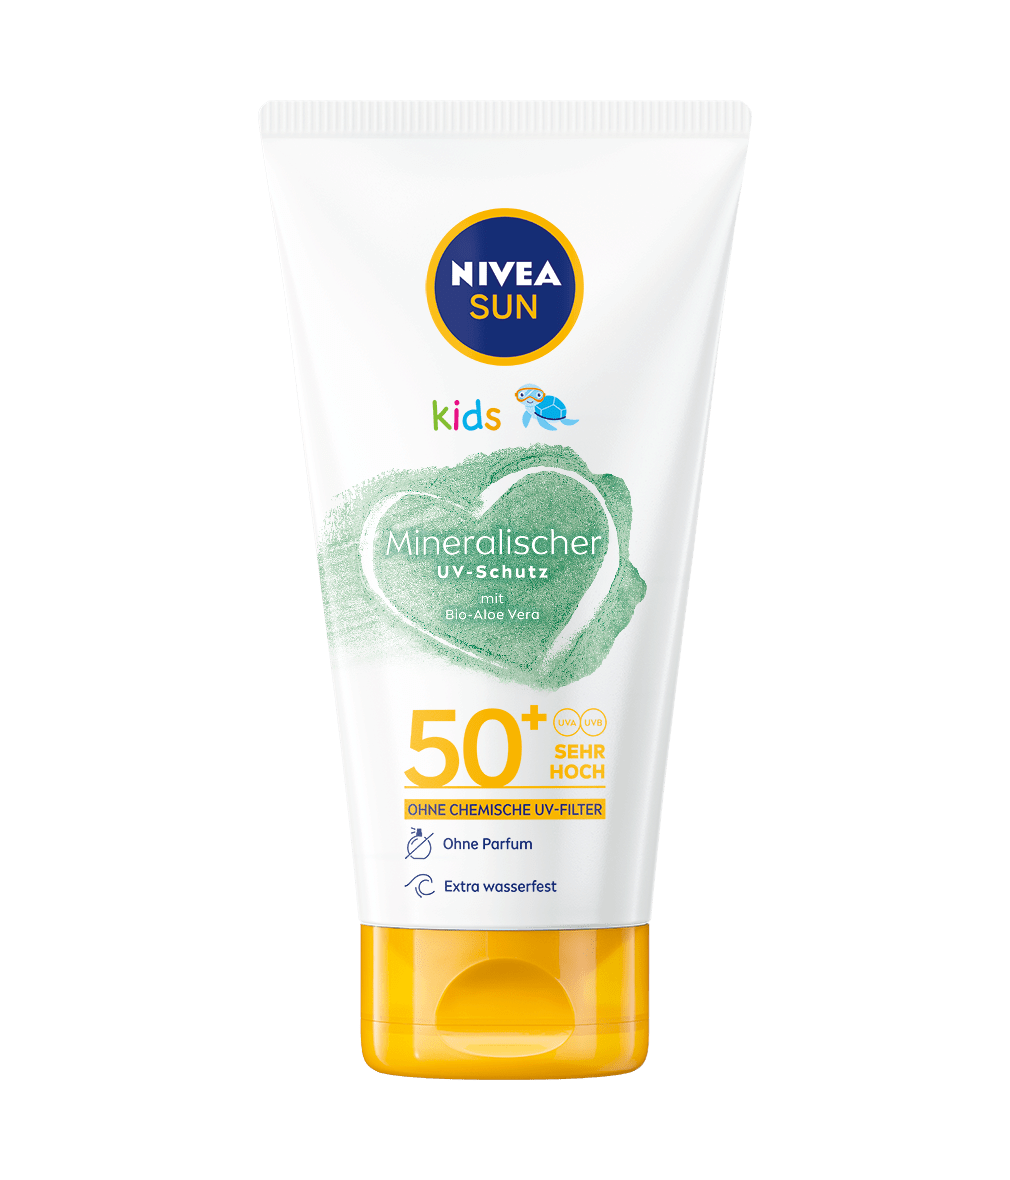 NIVEA SUN KIDS Mineralischer UV-Schutz 50+